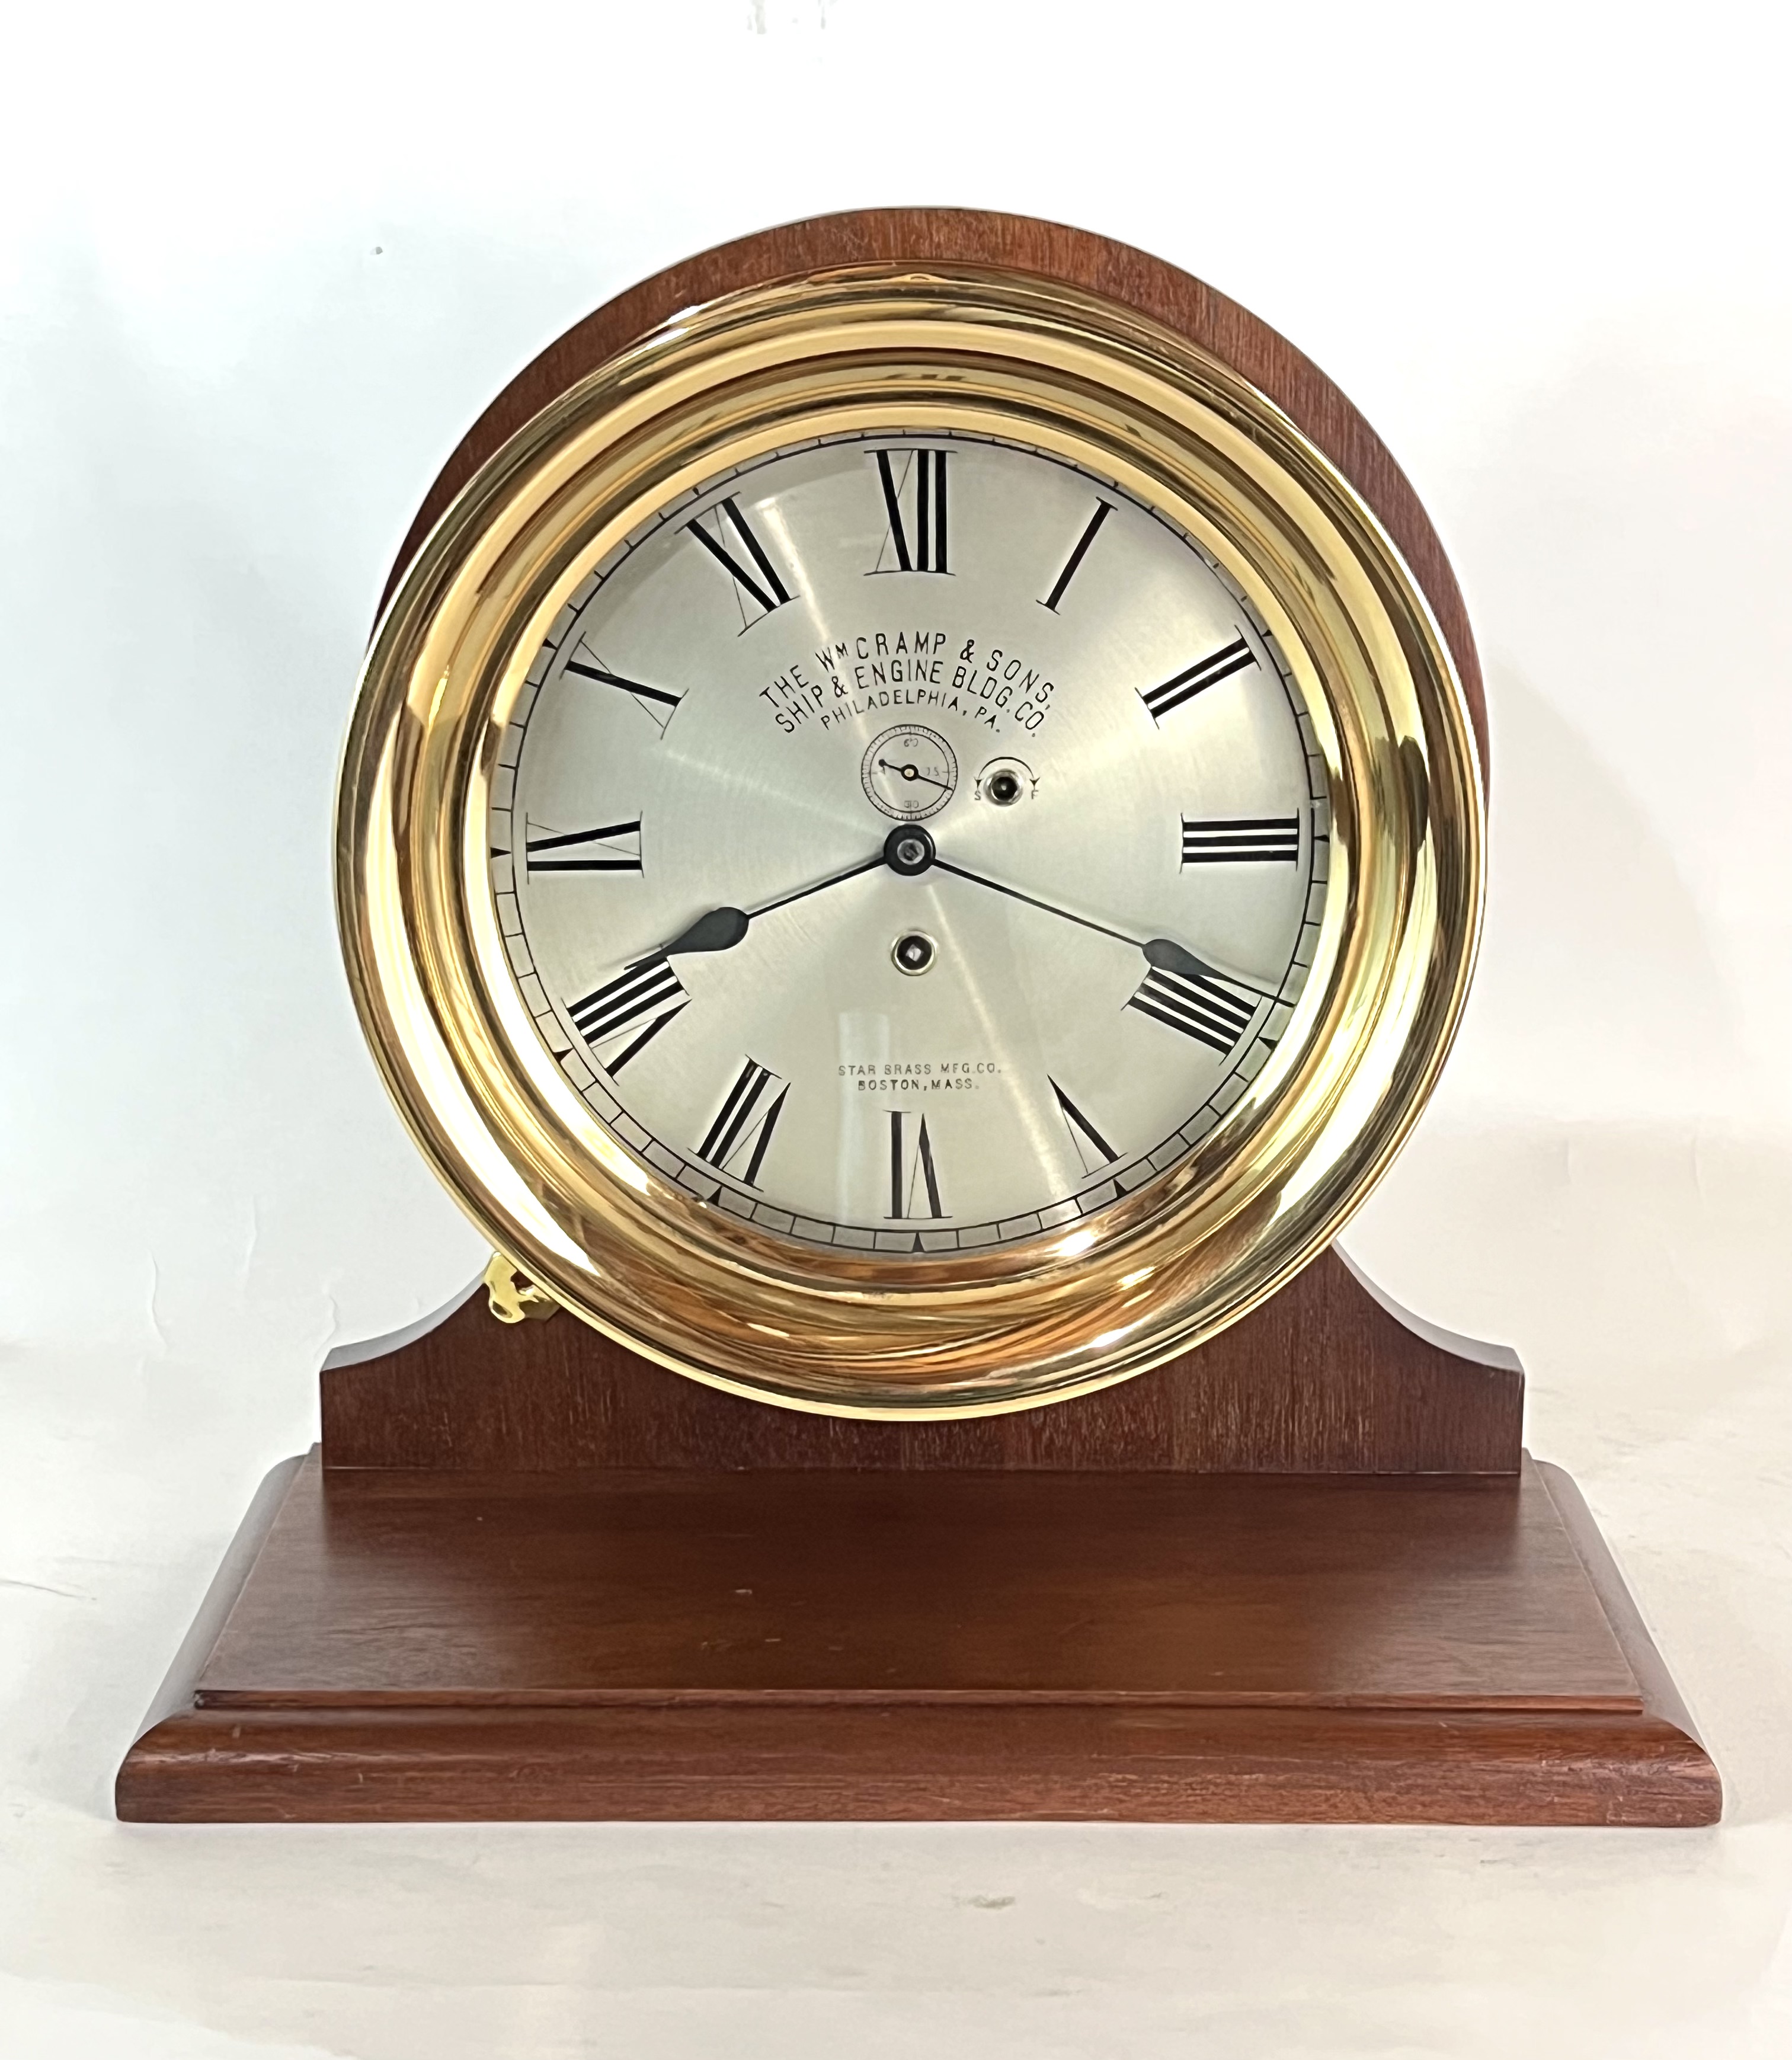 Early Waltham 8 1/2 inch Marine Clock for Wm. Cramp